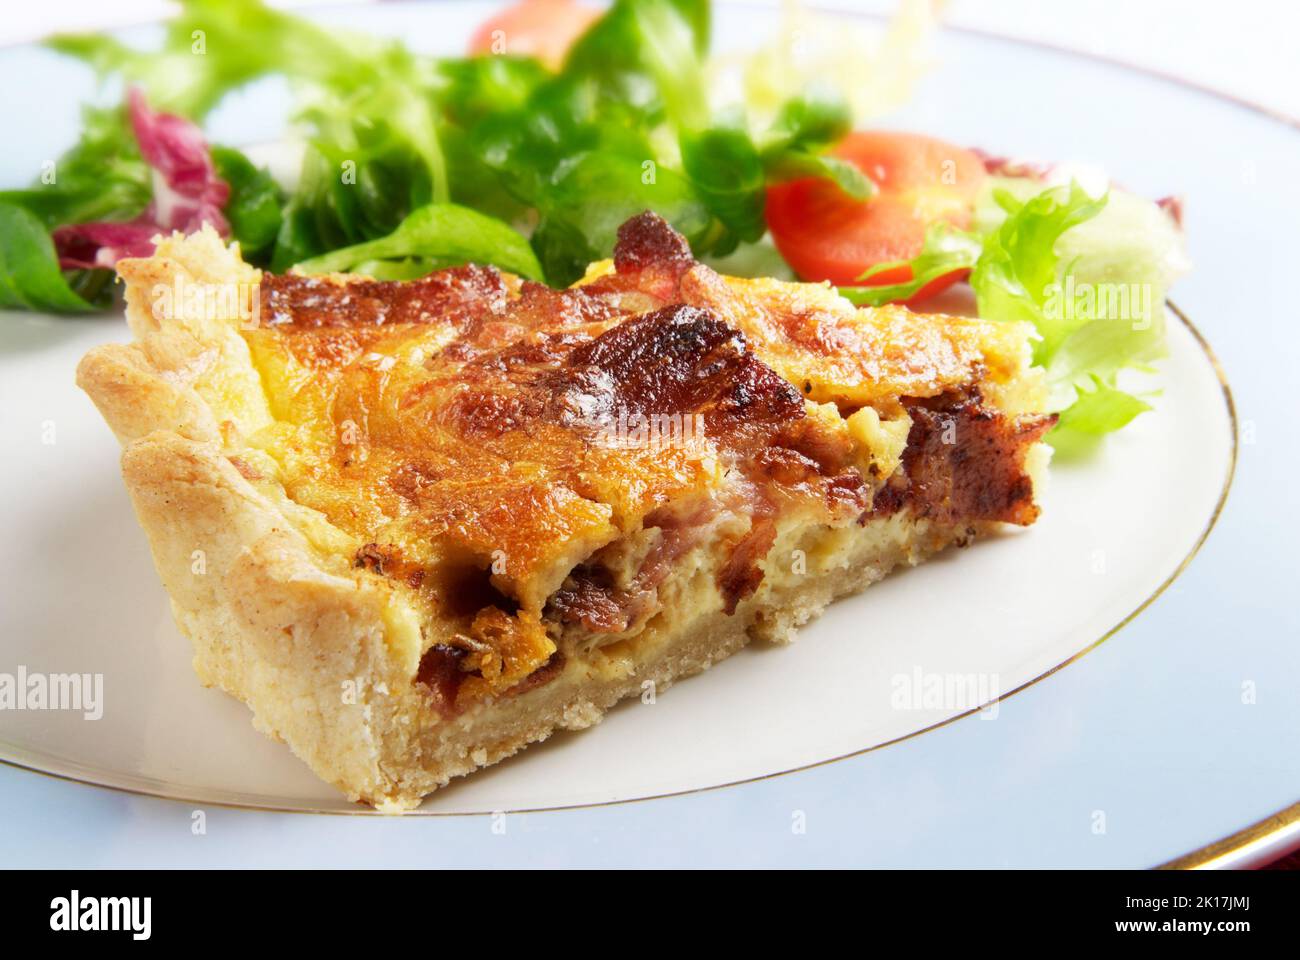 Une tranche de bacon et une quiche au fromage lorraine sur une assiette bleue avec une vinaigrette à la salade feuillue Banque D'Images